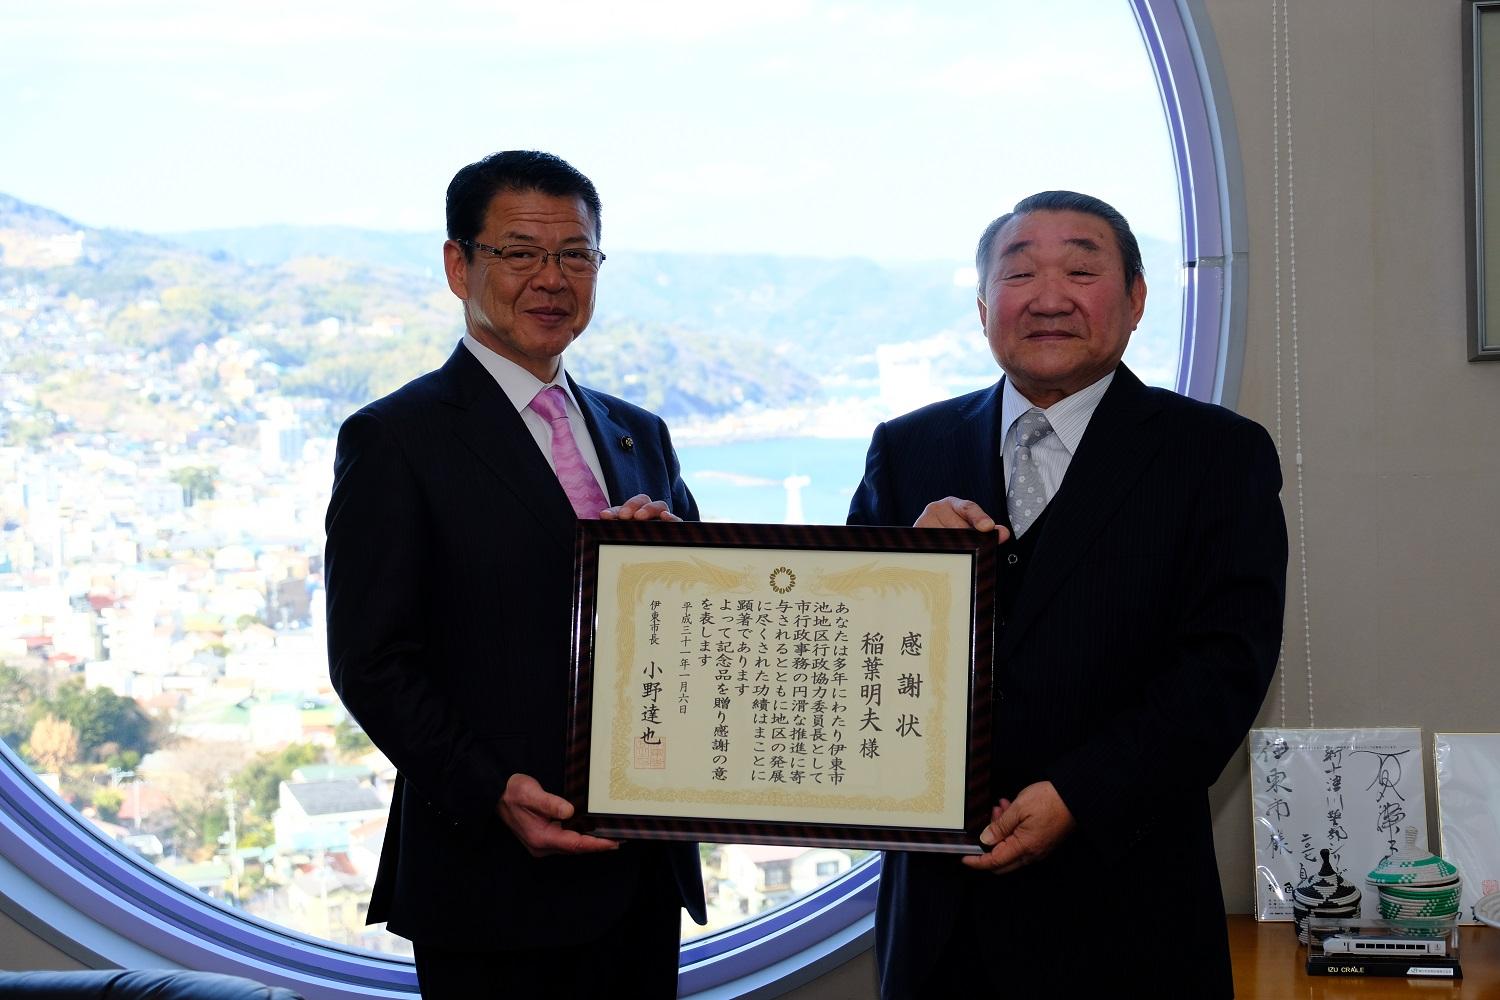 2019年1月30日市長と稲葉明夫さんの2人で感謝状を掲げる写真